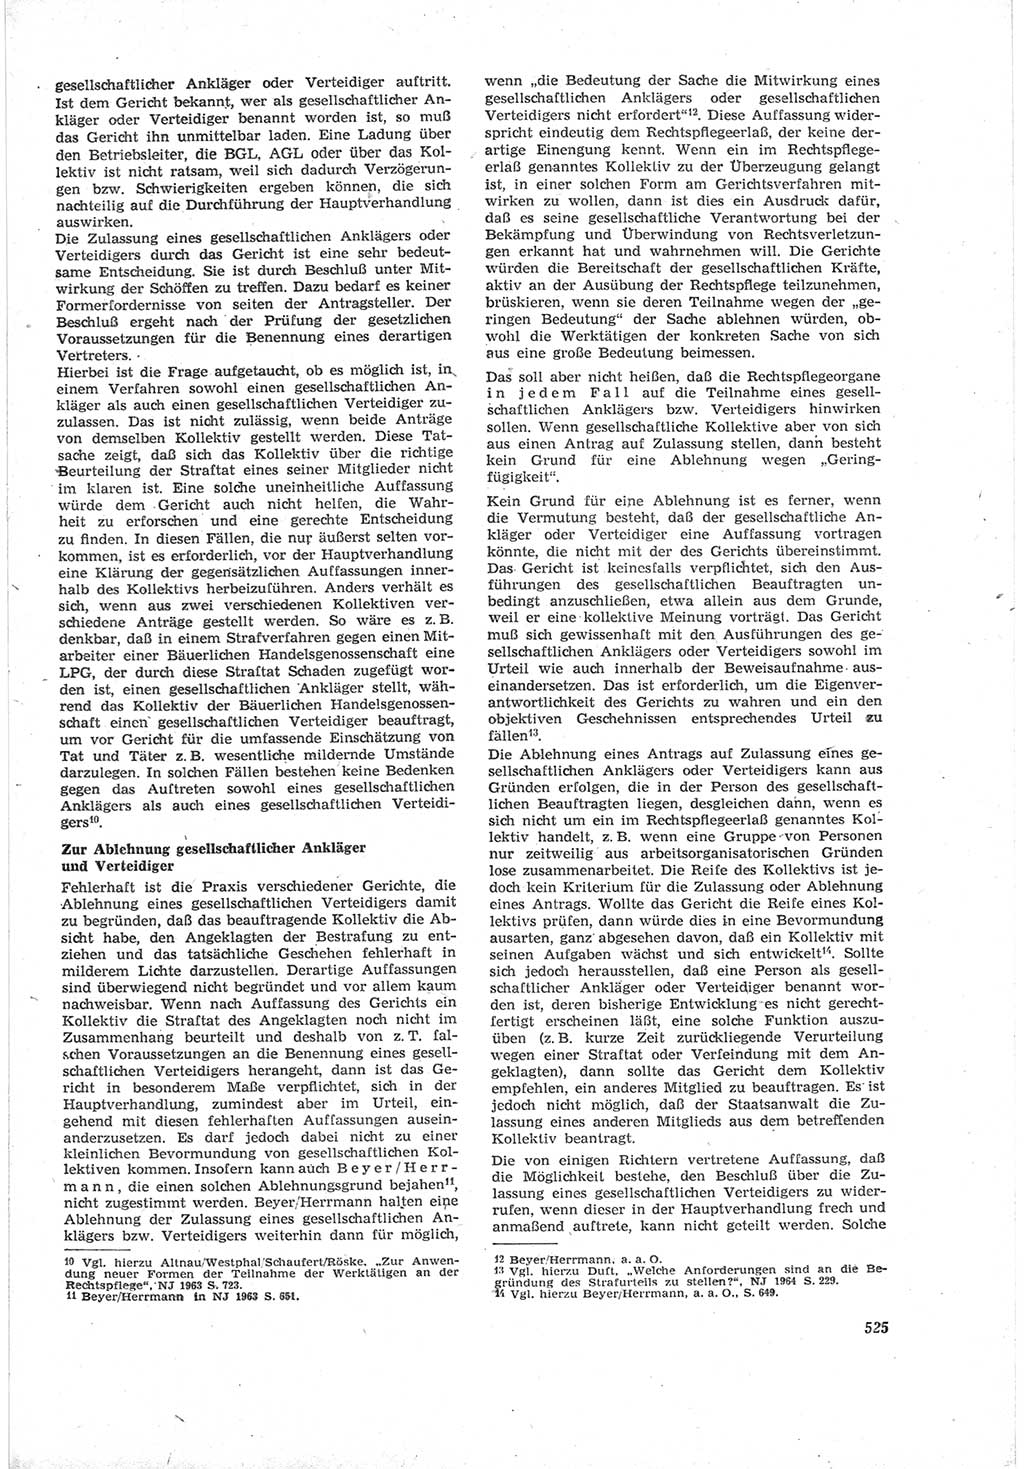 Neue Justiz (NJ), Zeitschrift für Recht und Rechtswissenschaft [Deutsche Demokratische Republik (DDR)], 18. Jahrgang 1964, Seite 525 (NJ DDR 1964, S. 525)